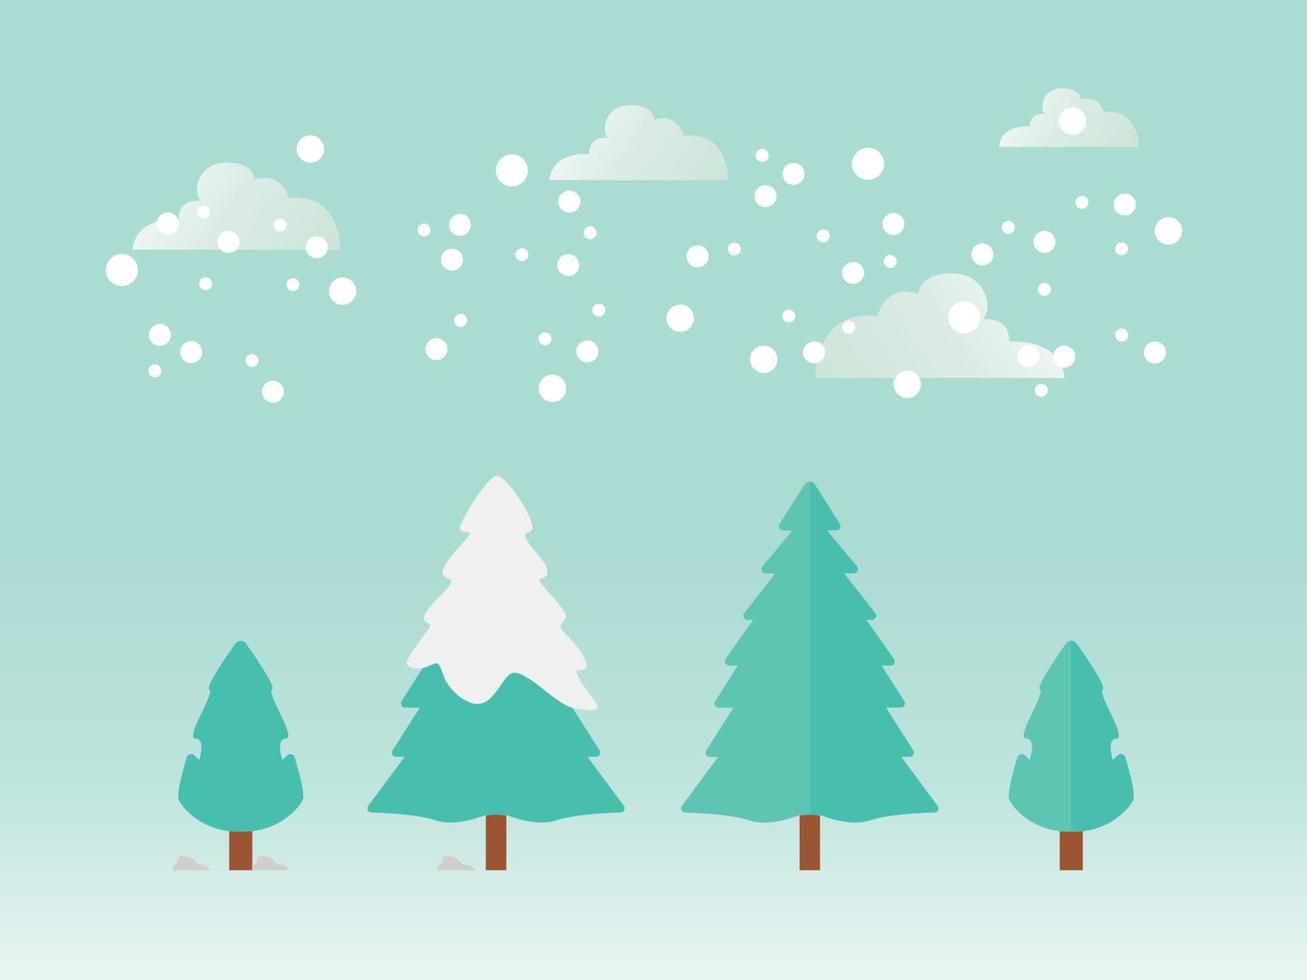 árbol con nieve, nevando en invierno, fondo de invierno con árboles nevados vector